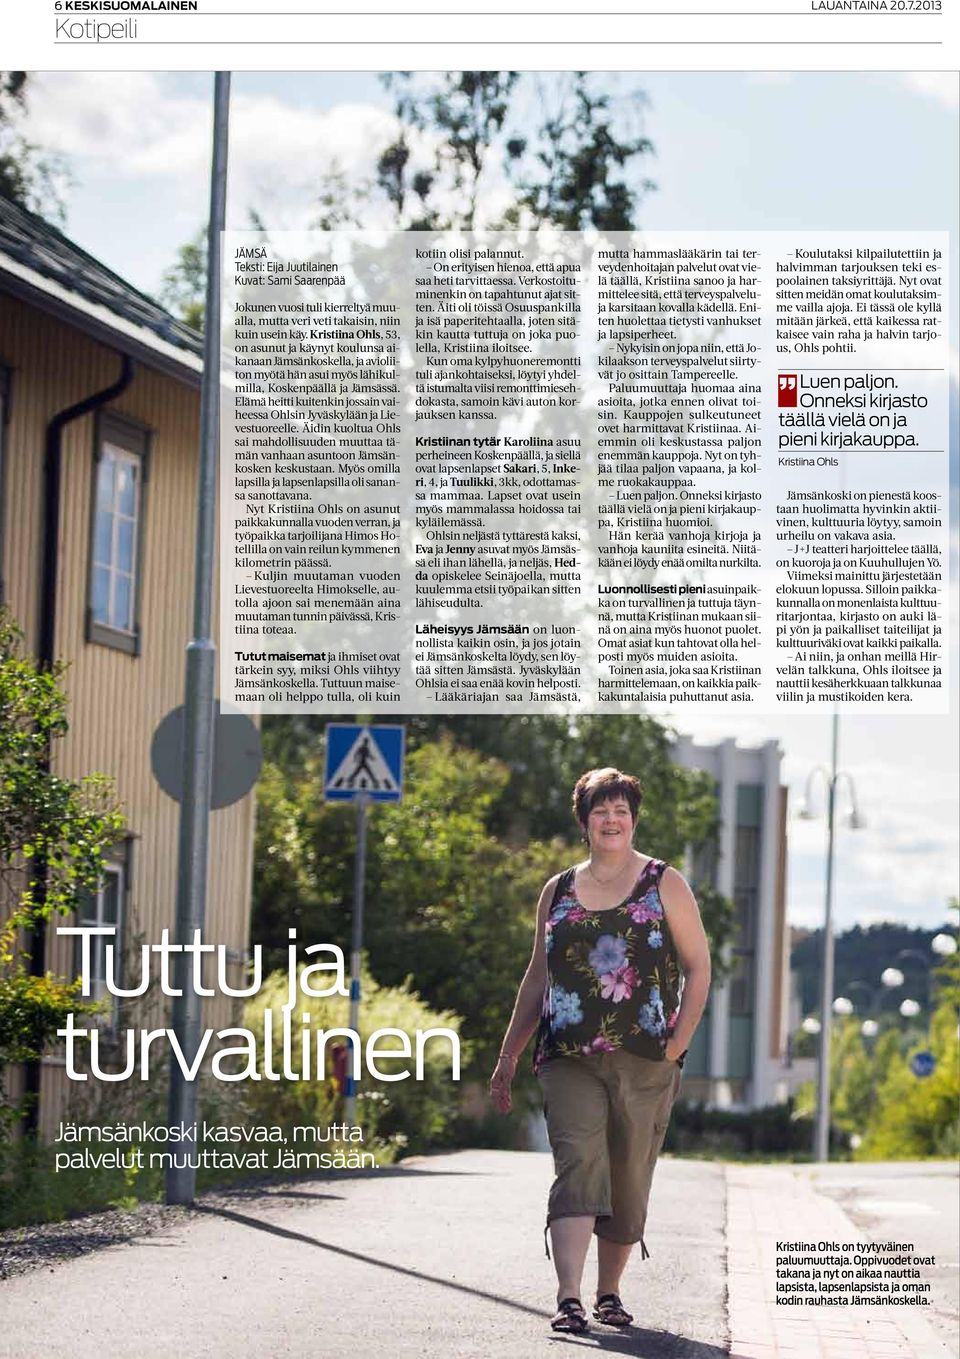 Elämä heitti kuitenkin jossain vaiheessa Ohlsin Jyväskylään ja Lievestuoreelle. Äidin kuoltua Ohls sai mahdollisuuden muuttaa tämän vanhaan asuntoon Jämsänkosken keskustaan.